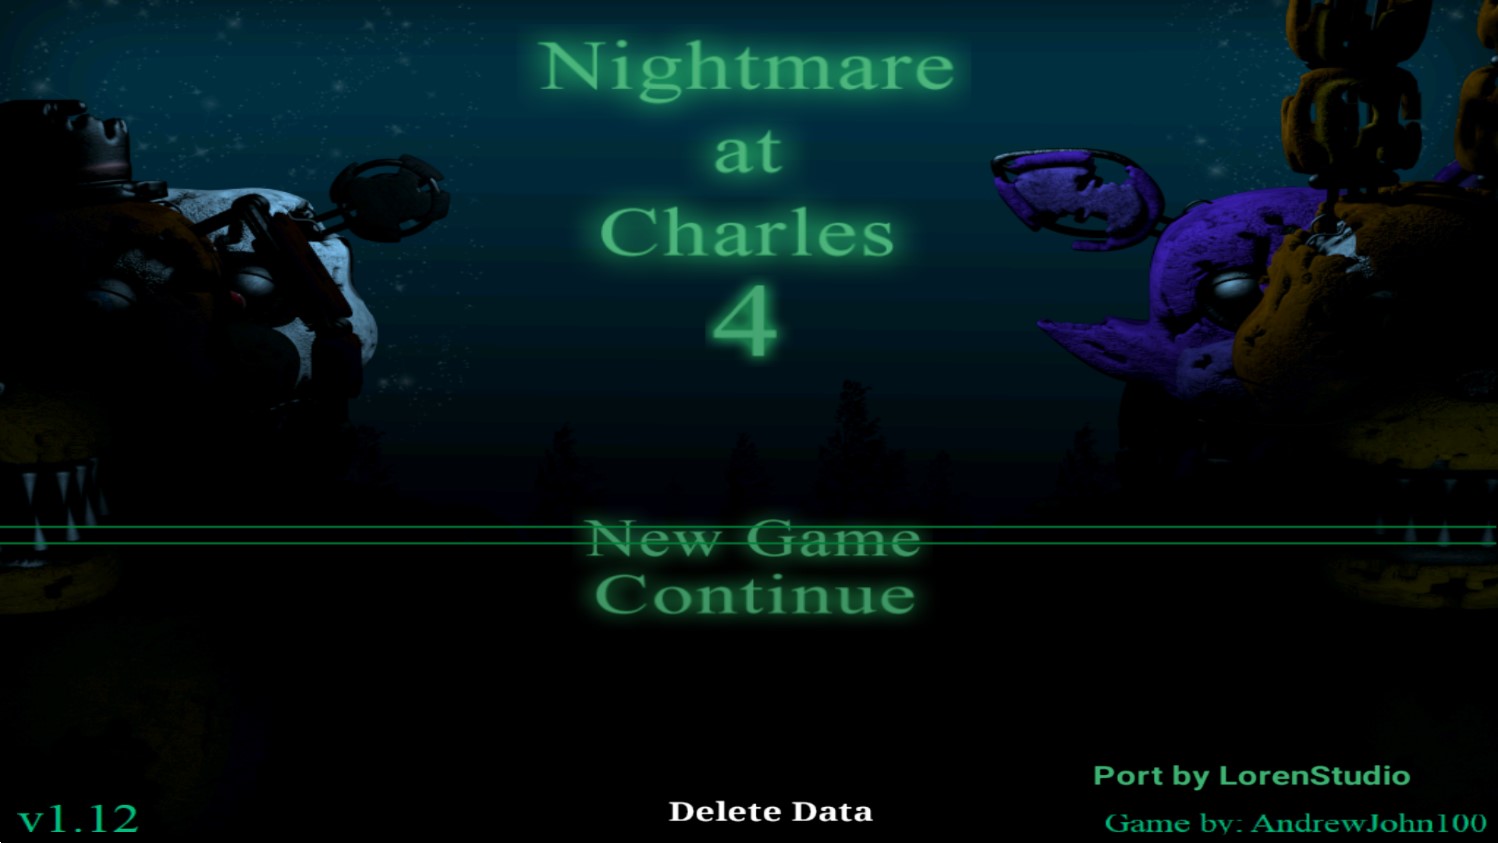 NightmareatCharles4